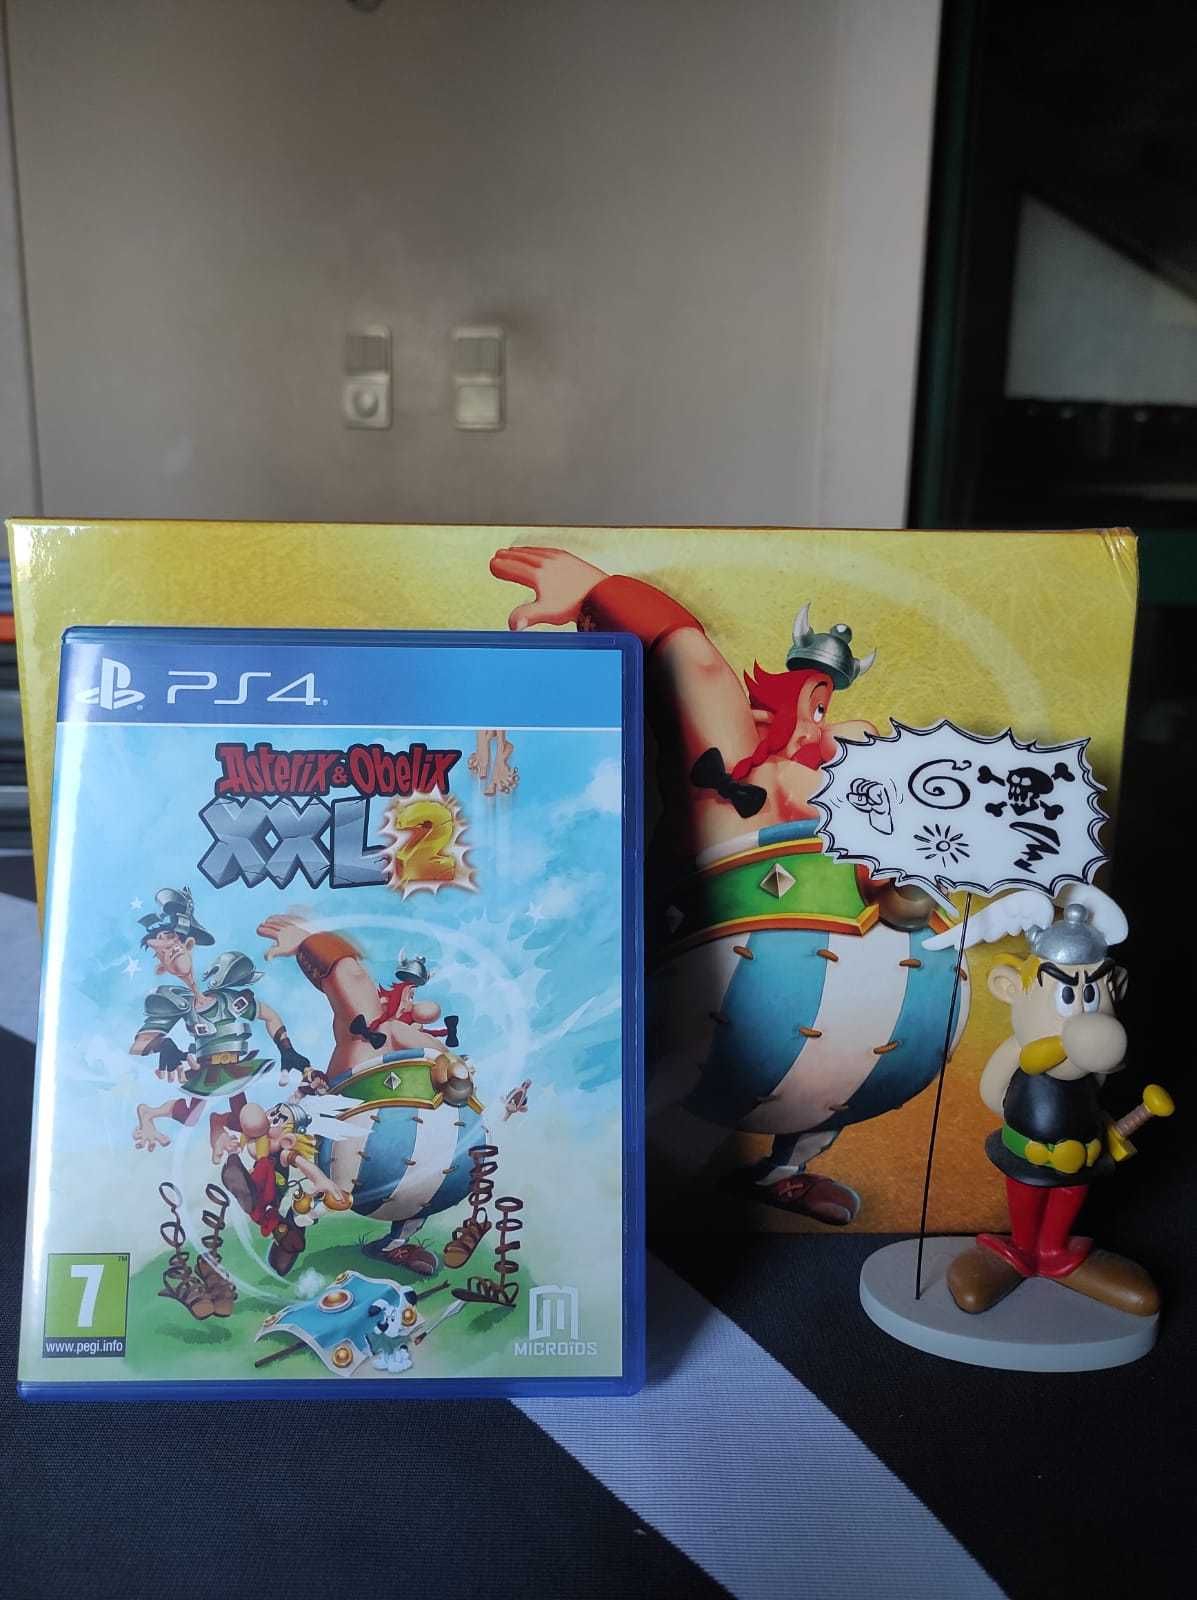 Asterix & Obelix XXL2 Collectors Edition - PS4